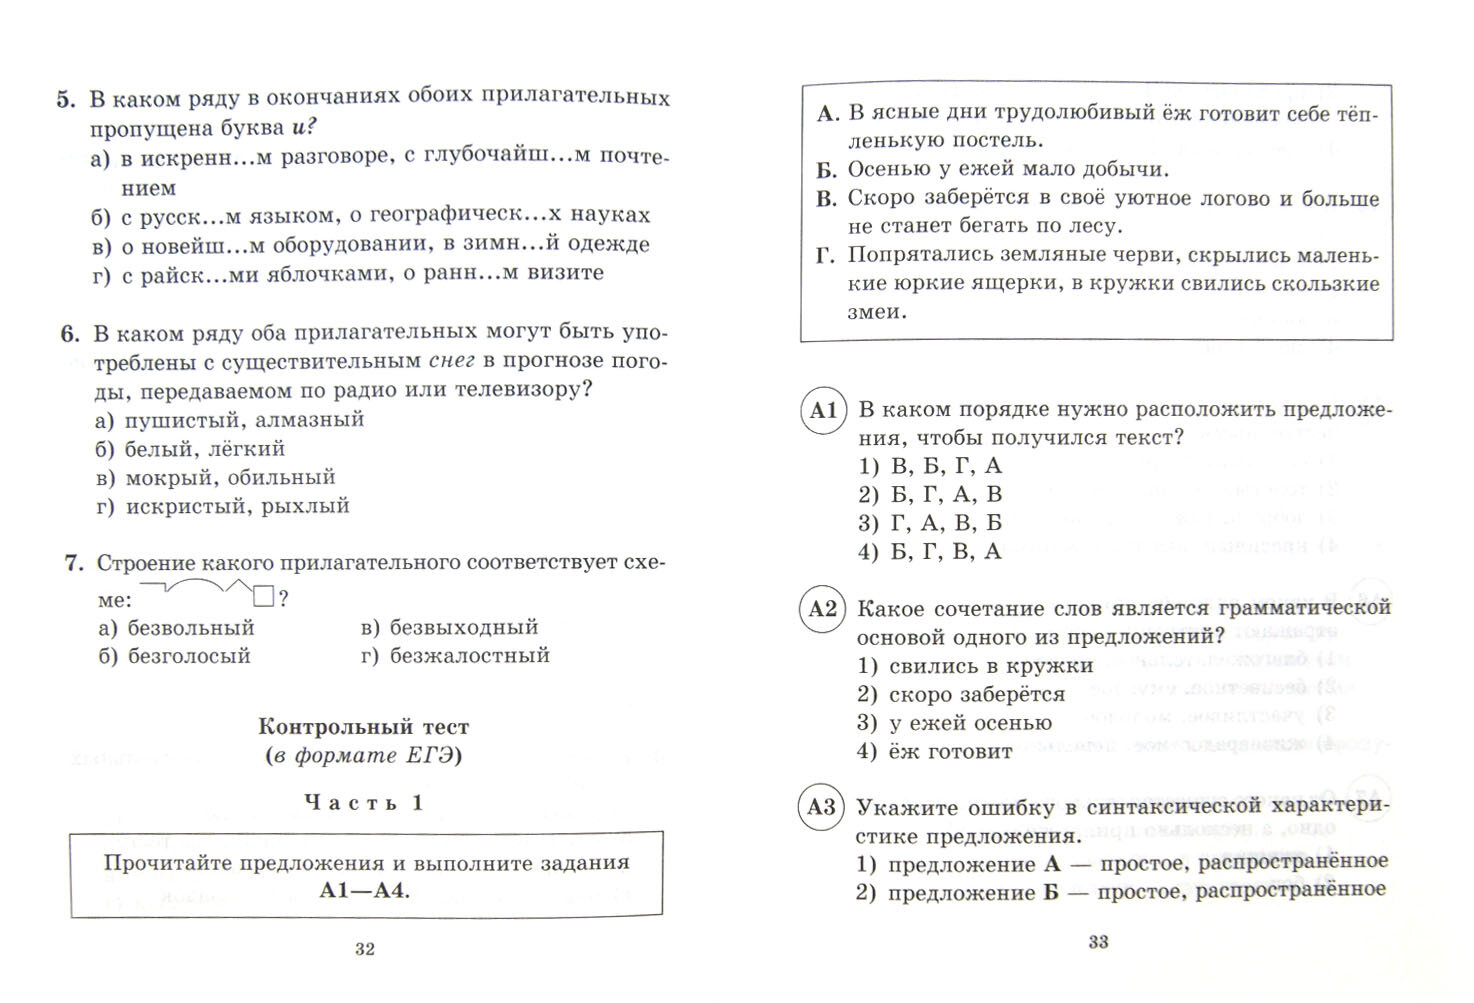 Тесты по русскому языку для тематического и итогового контроля. 5 класс - фото №2